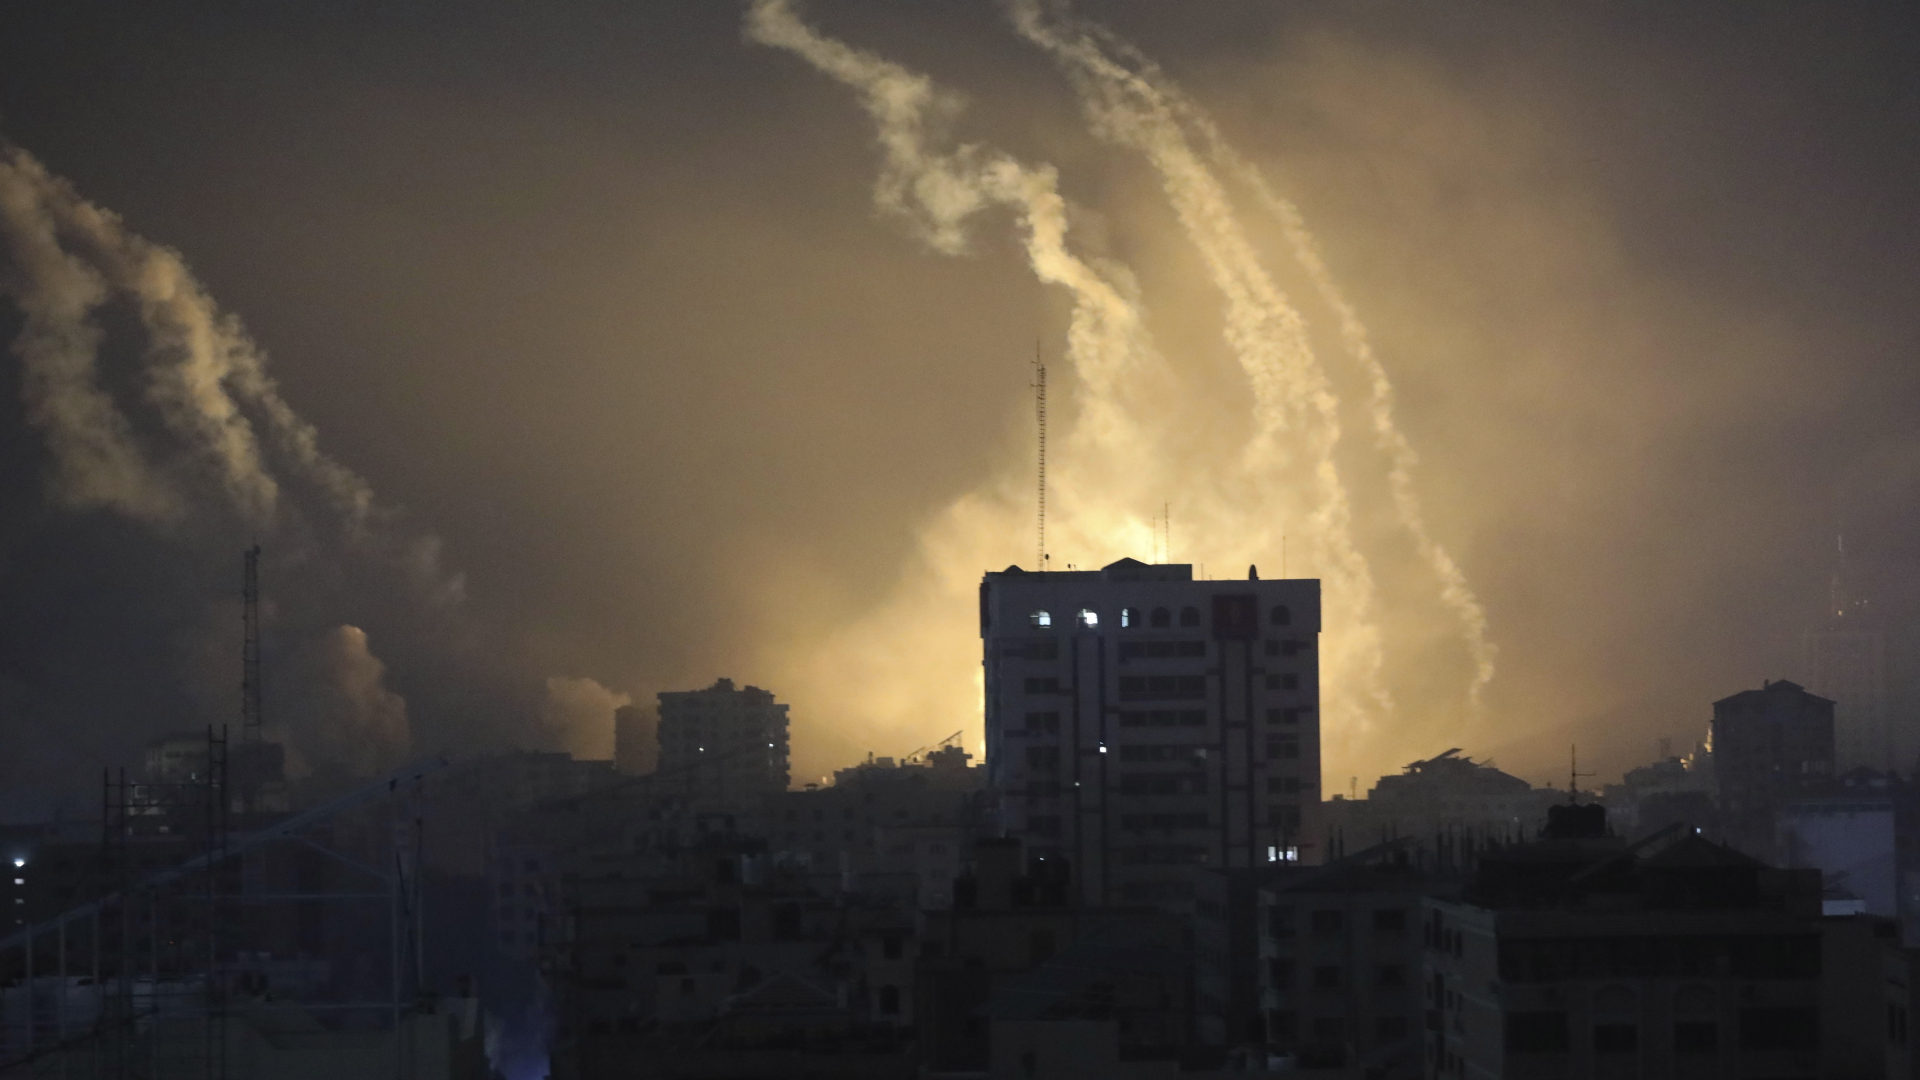 Rauch von Explosionen, verursacht durch israelischen Beschuss im nördlichen Gazastreifen, steigen in den nächtlichen Himmel.